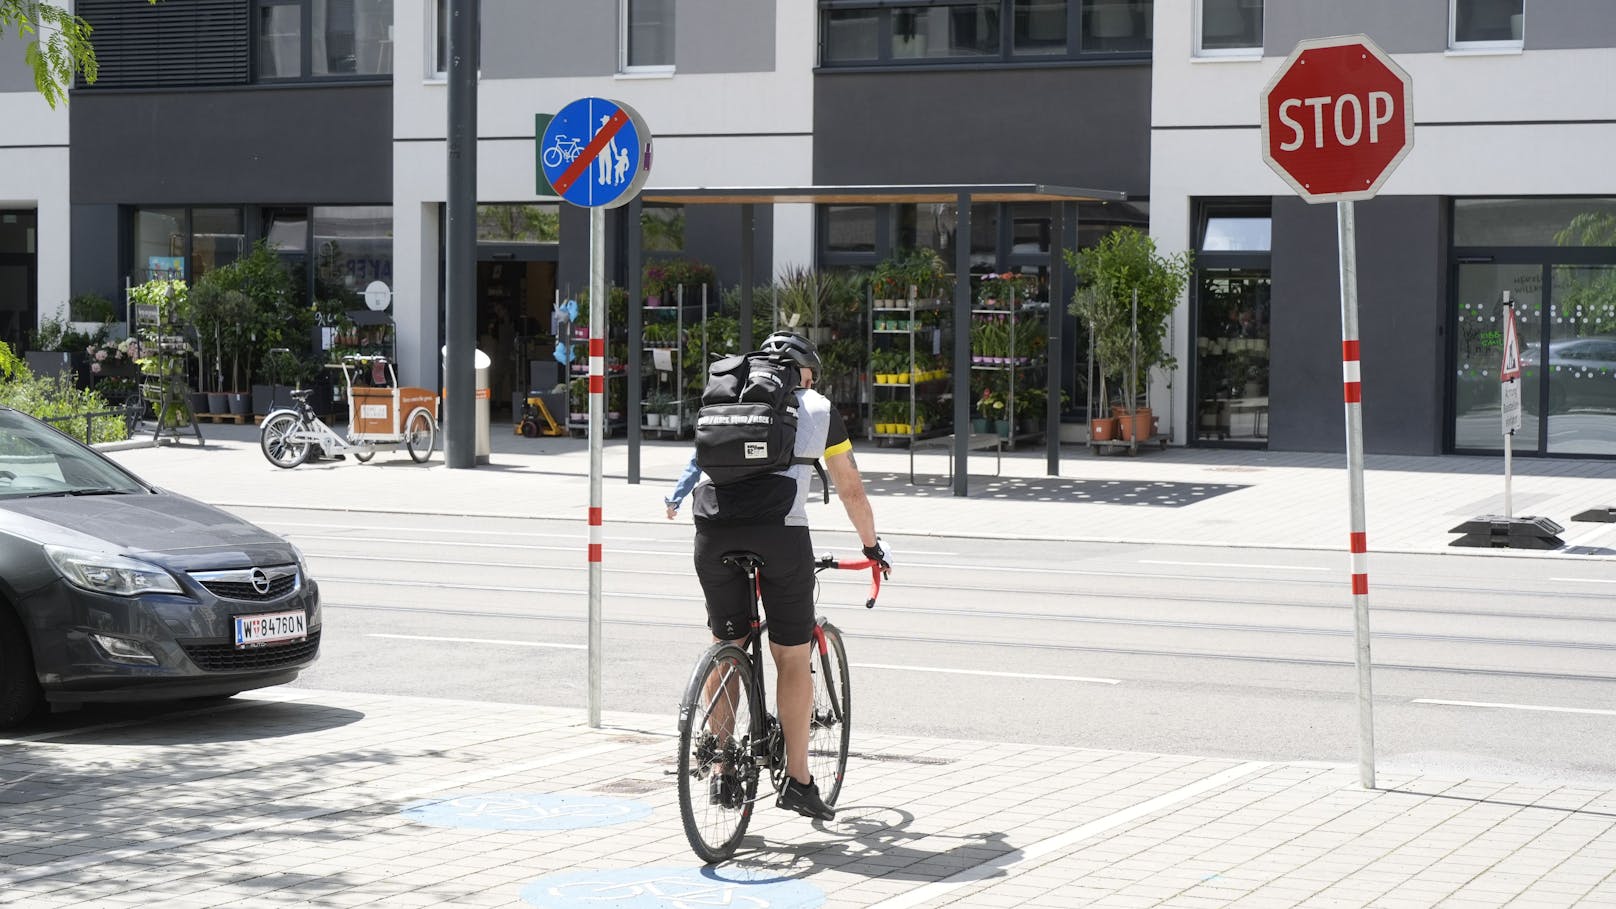 "Sinnlos": Stopptafel für Radfahrer sorgt für Aufregung